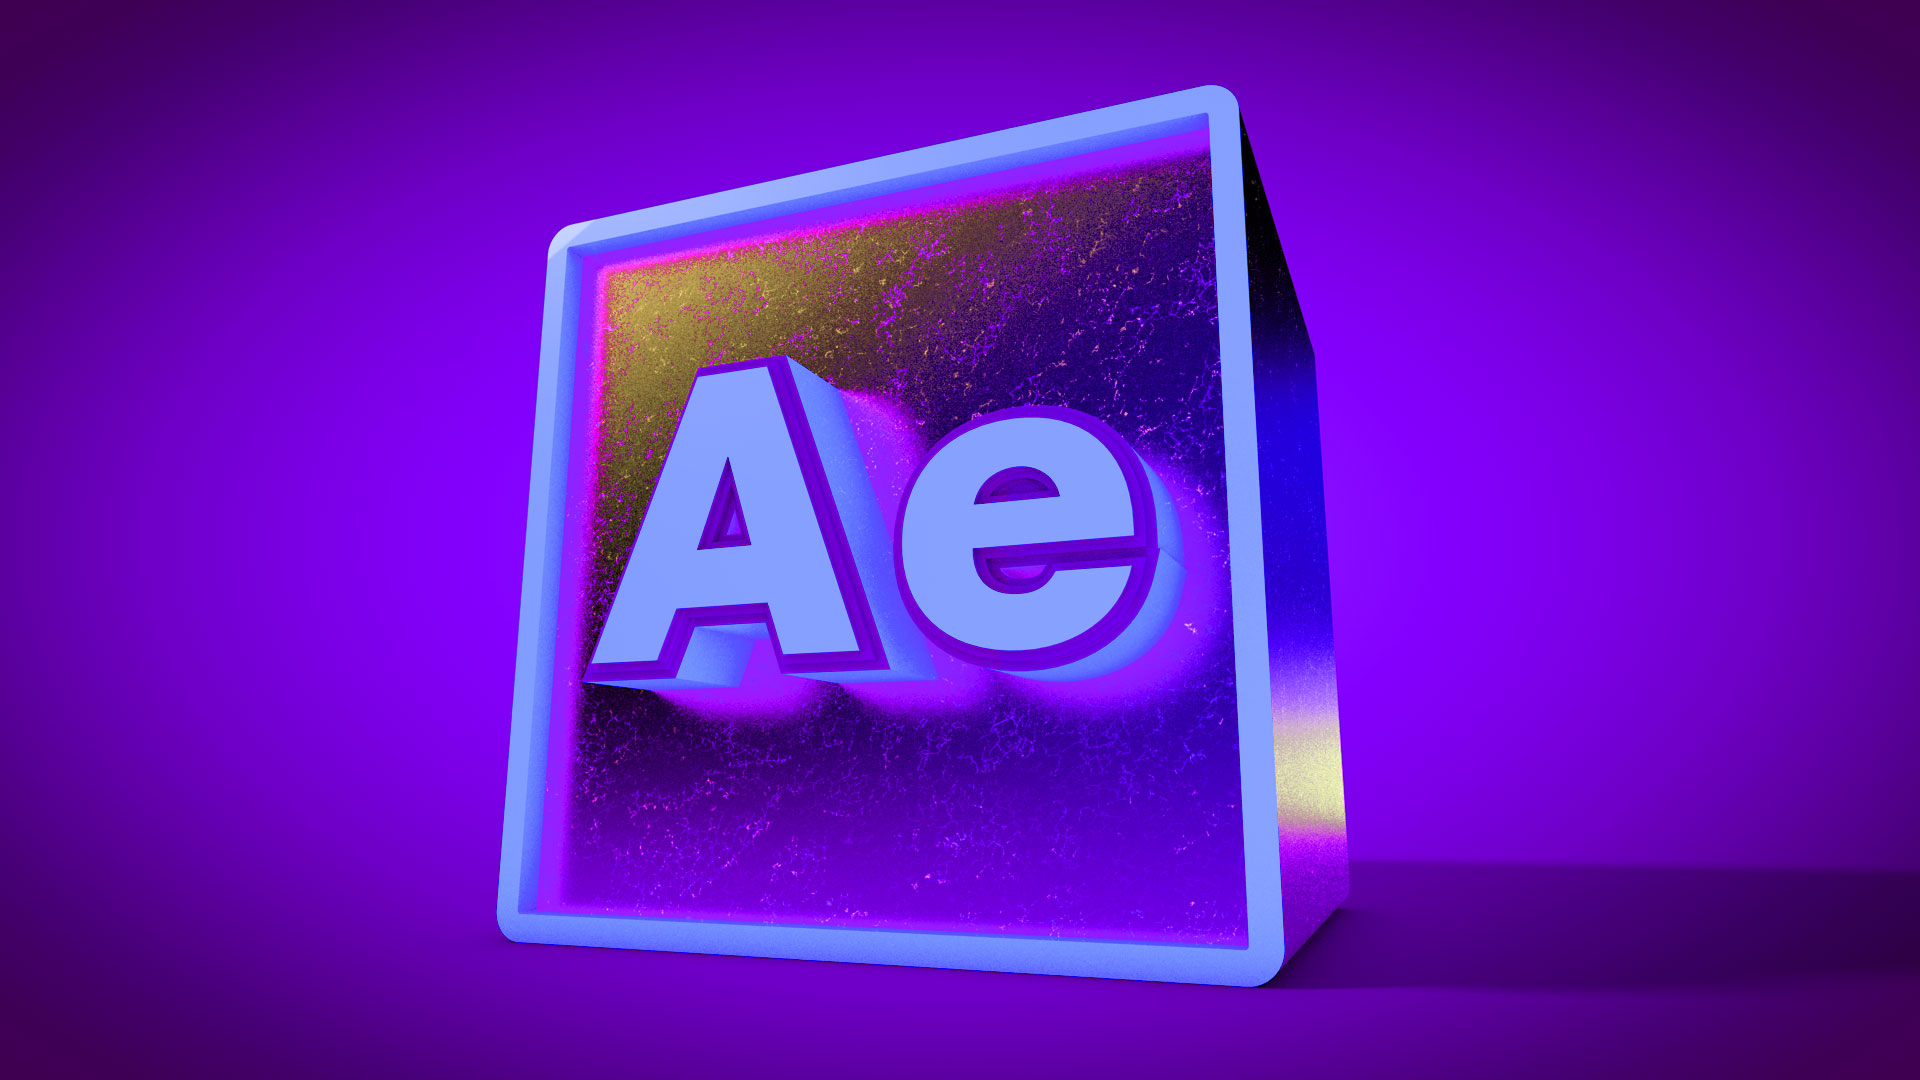 3д after effects. After Effects. Adobe after Effects. Adobe after Effects логотип. Адобе Афтер эффект.